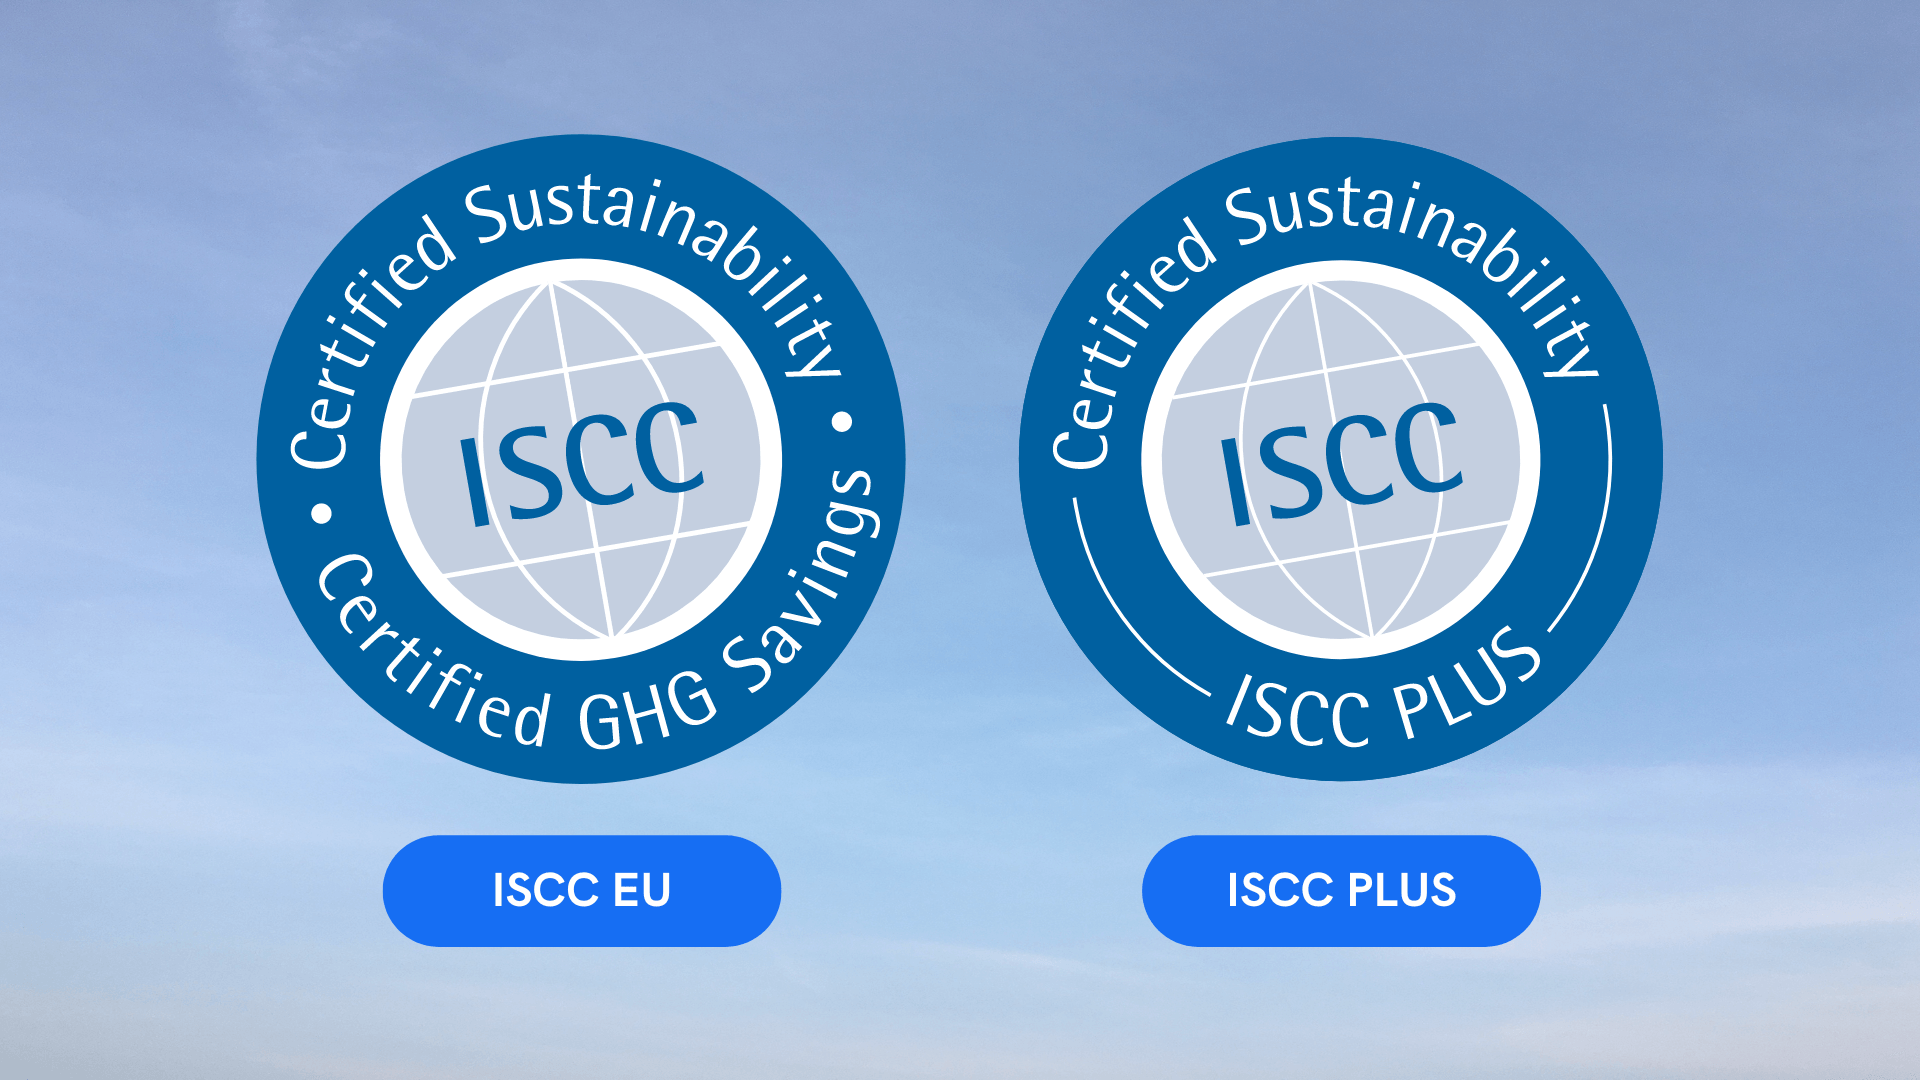 ISCC EU and ISCC PLUS